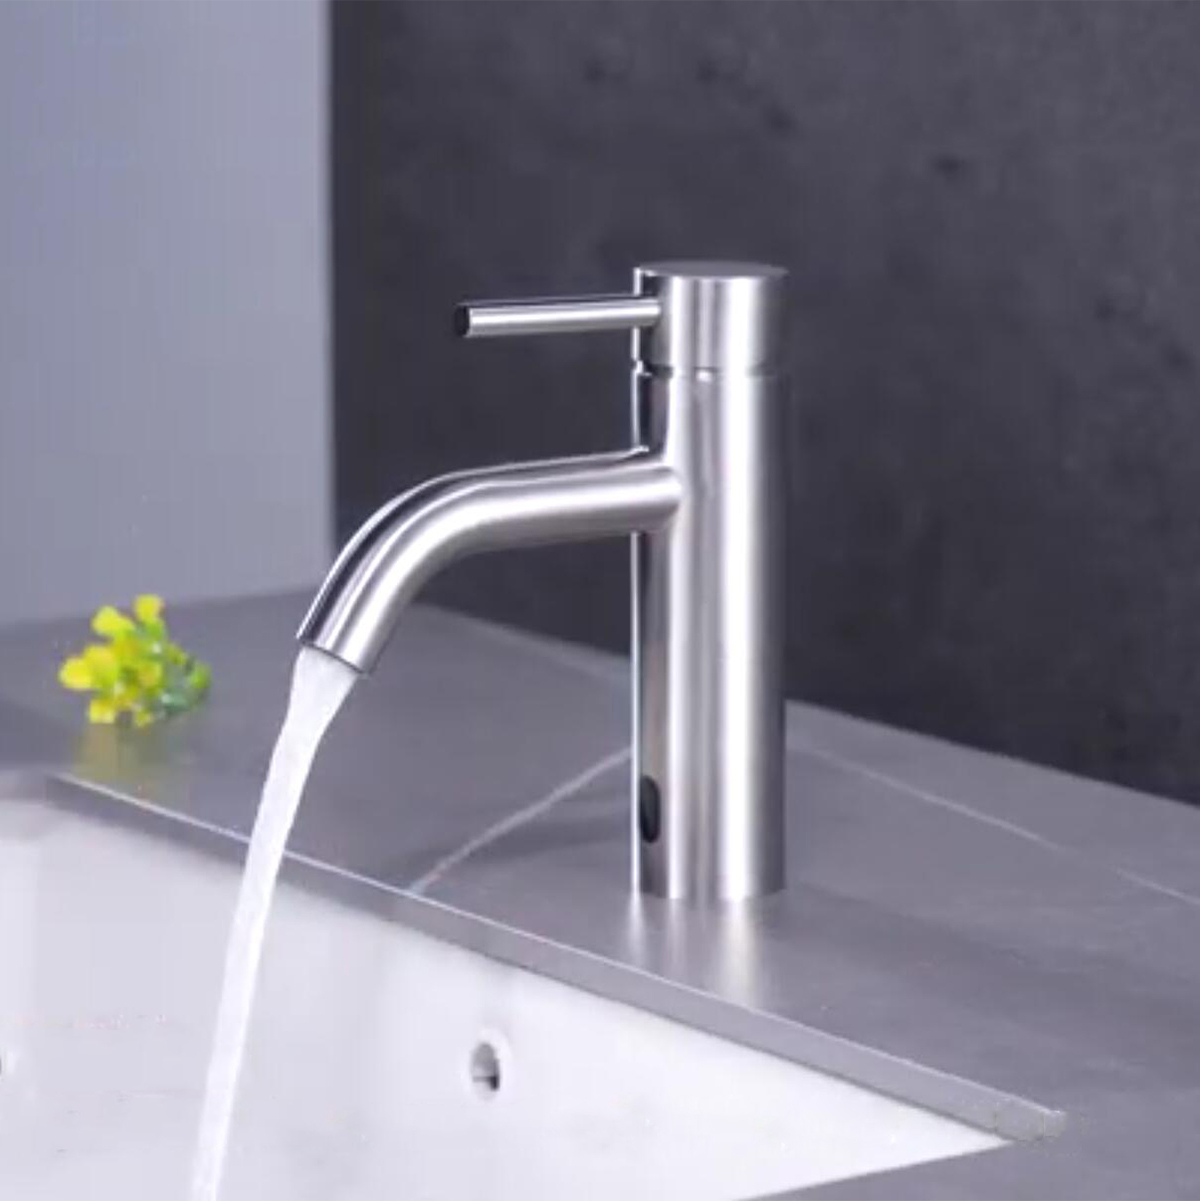 Aquacubic Touchless Bathroom Faucet Automatic Motion Sensor Bathroom Sink Faucet